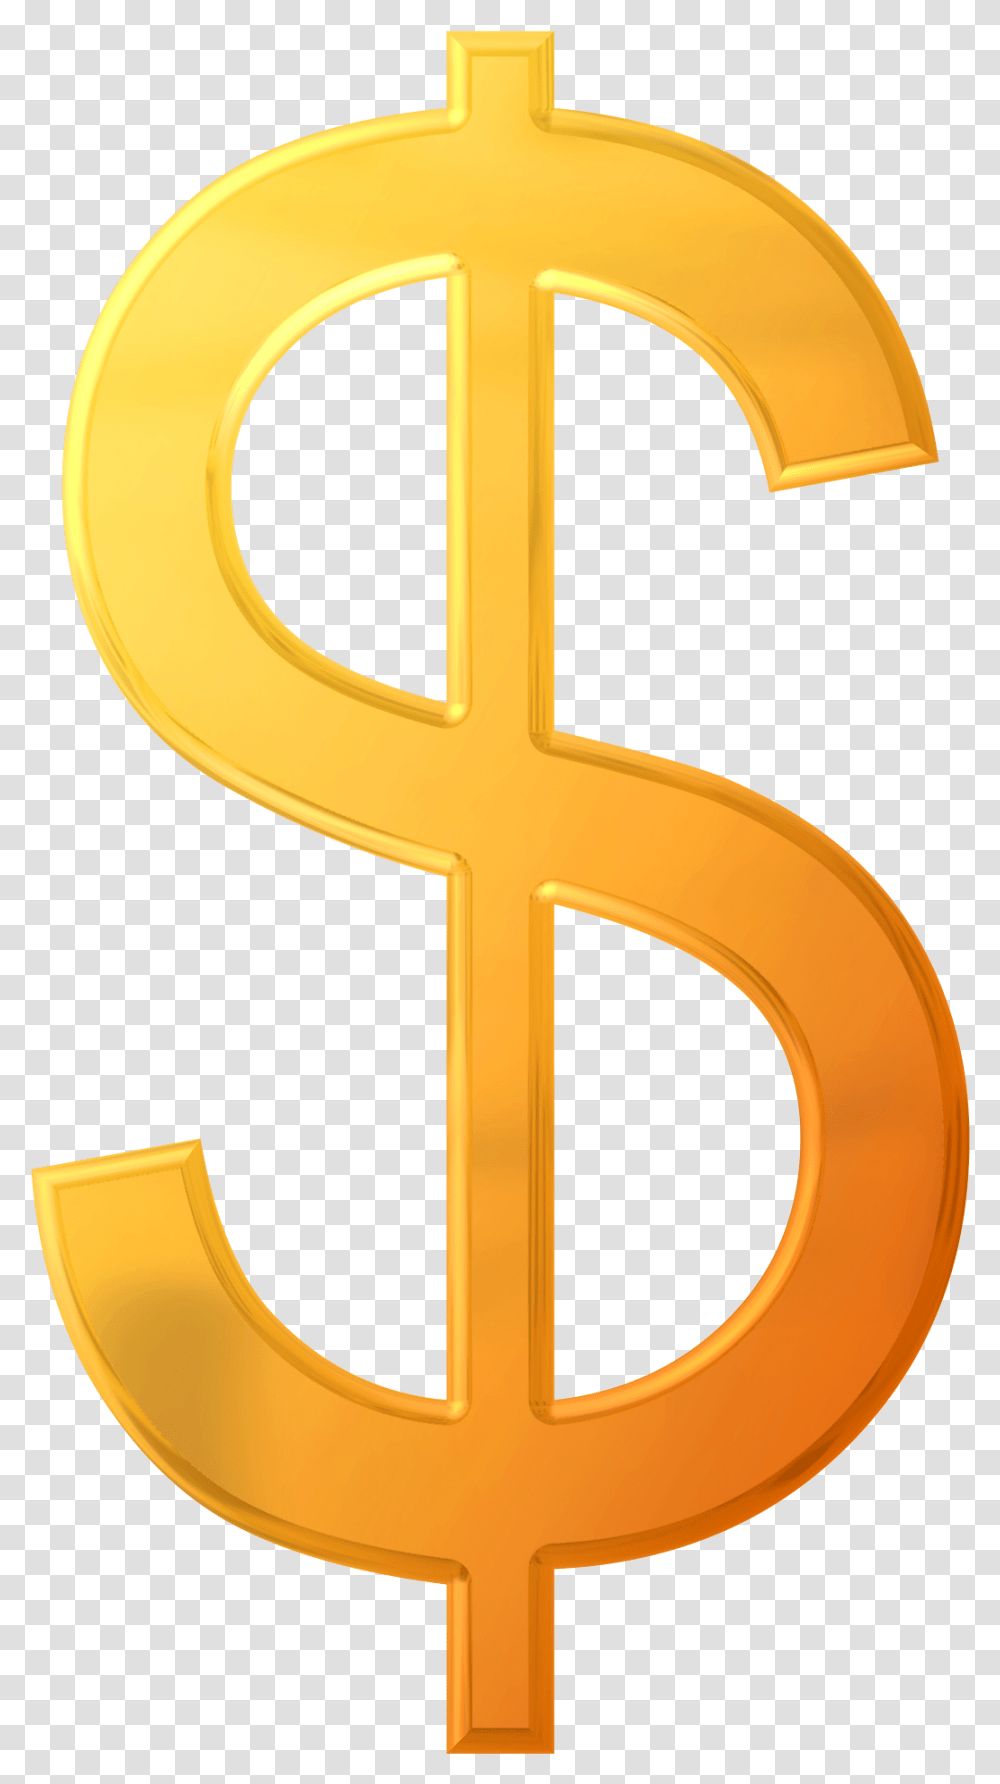 Download Dollar Sign Image For Free Dollar Sign, Cross, Symbol, Emblem, Logo Transparent Png